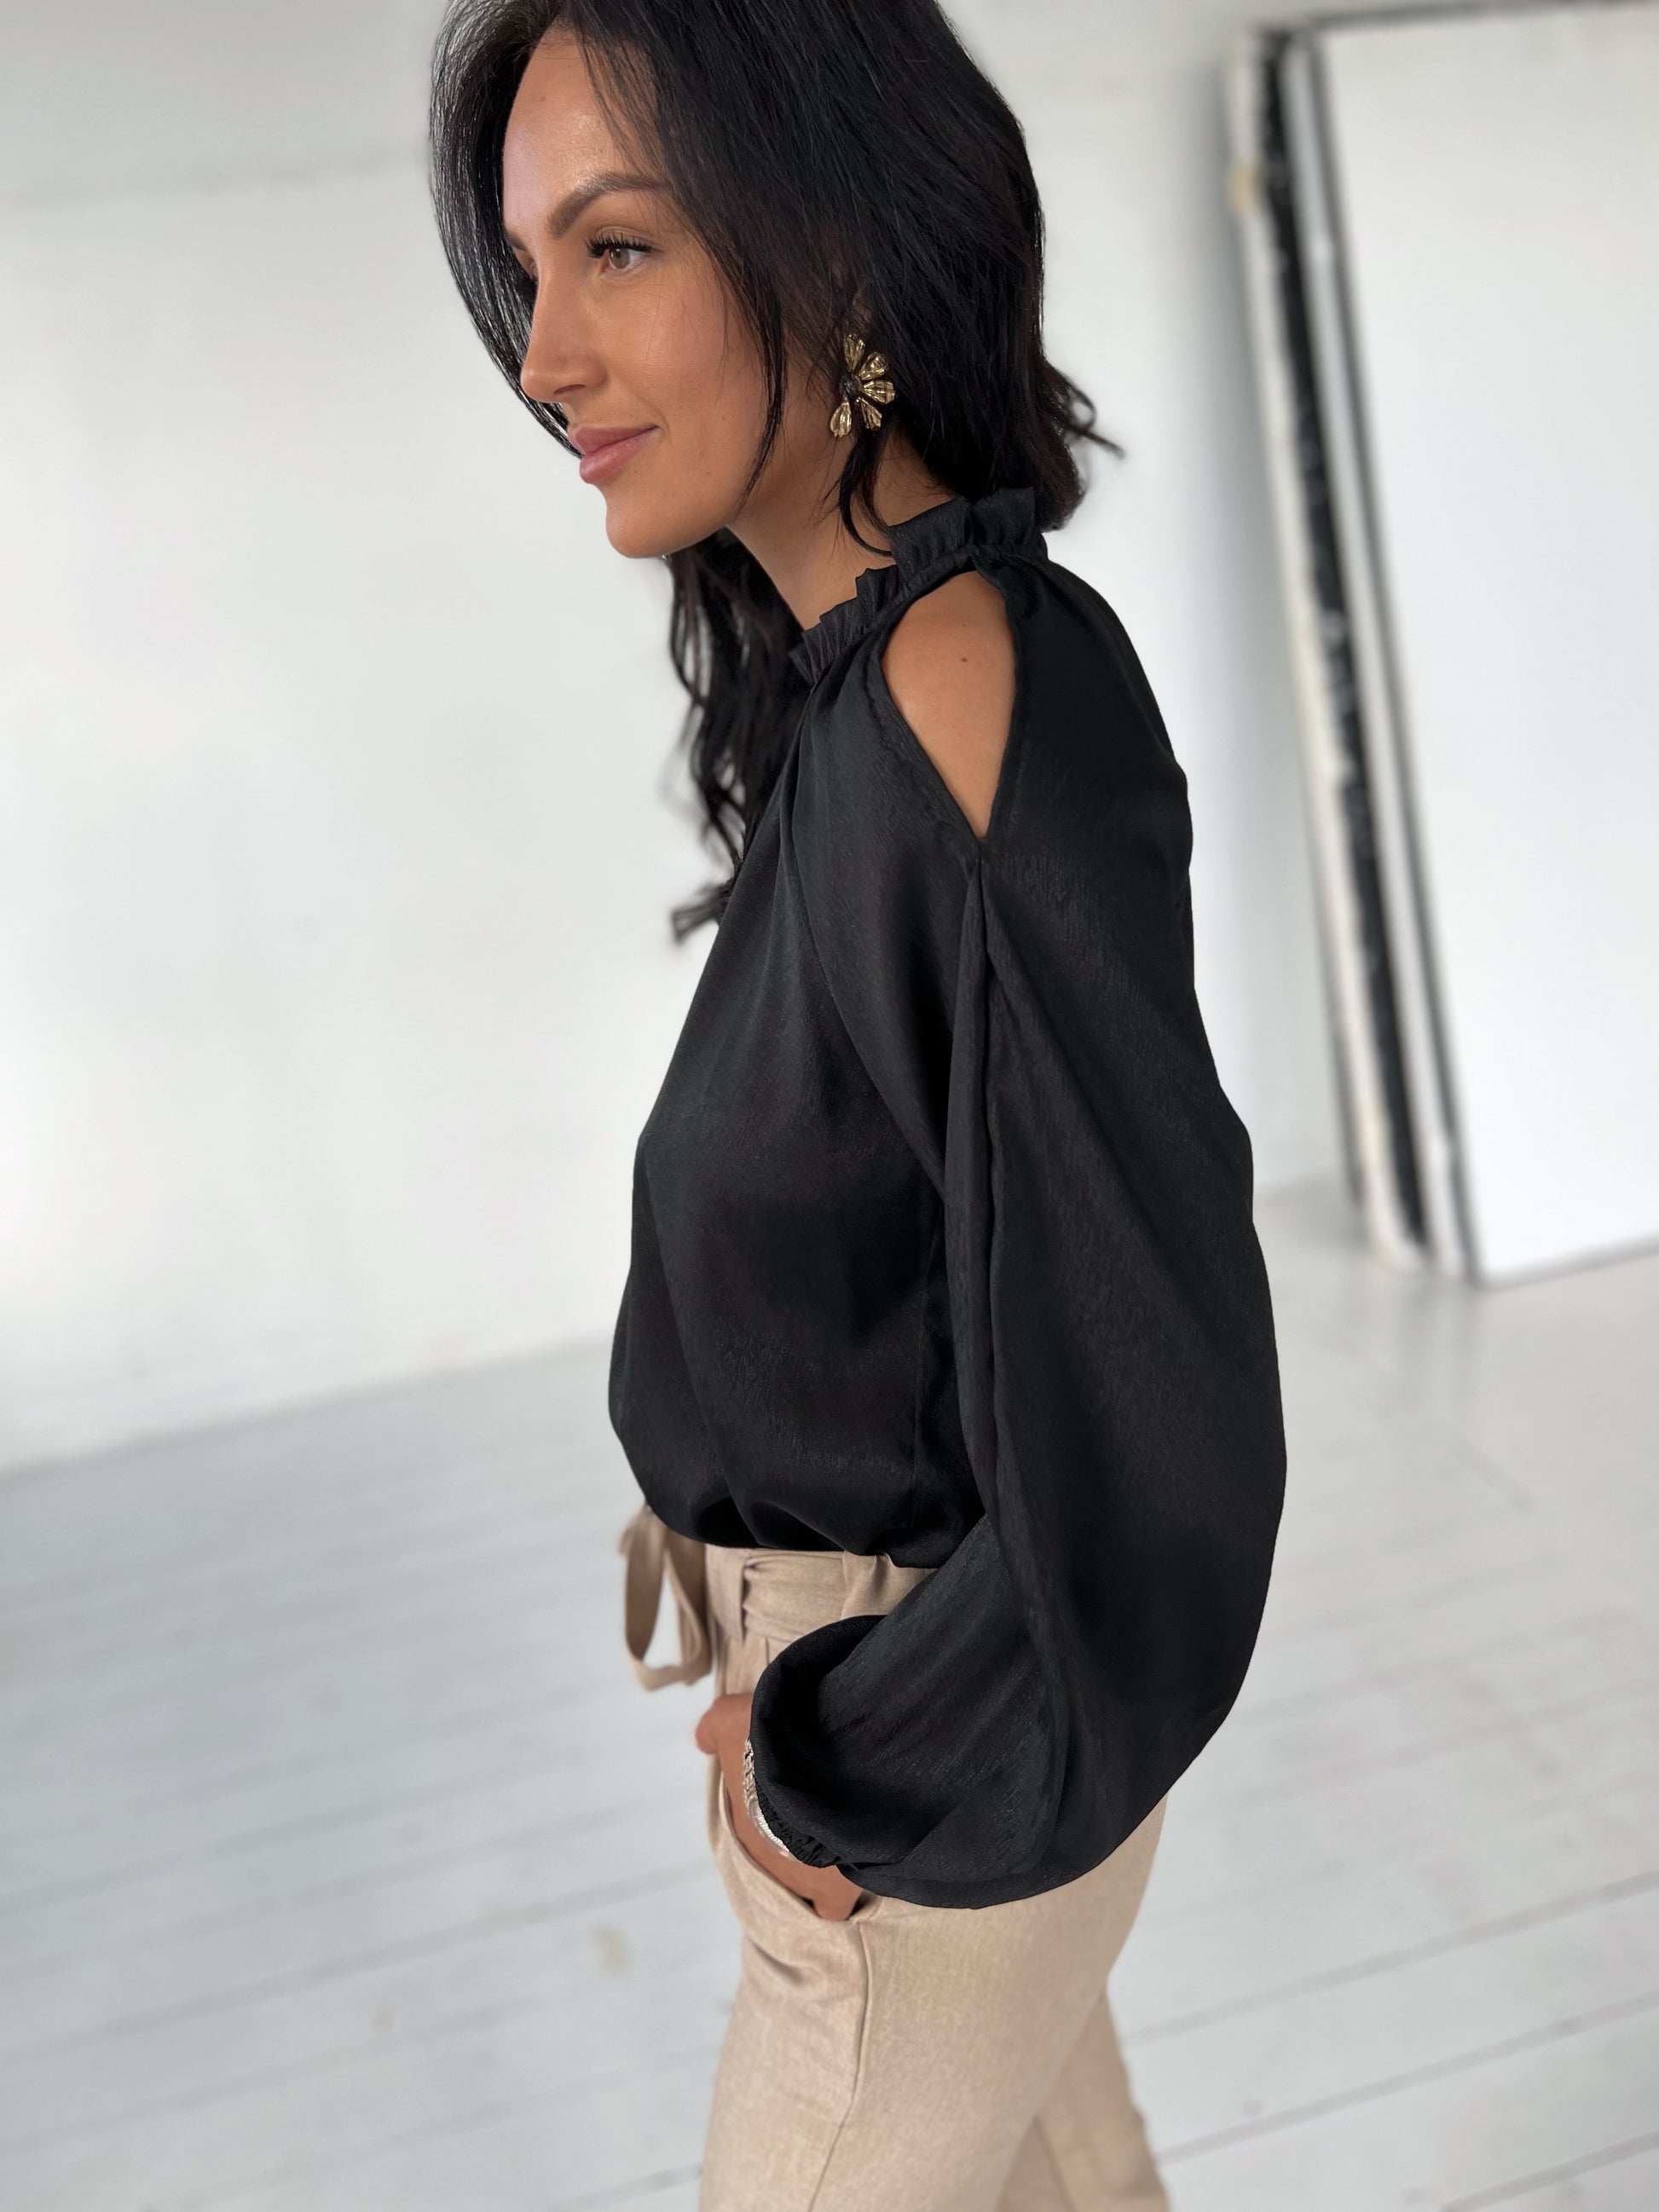 Model i Laura sort bluse med åbne skuldre fra webshoppen Aaberg Copenhagen